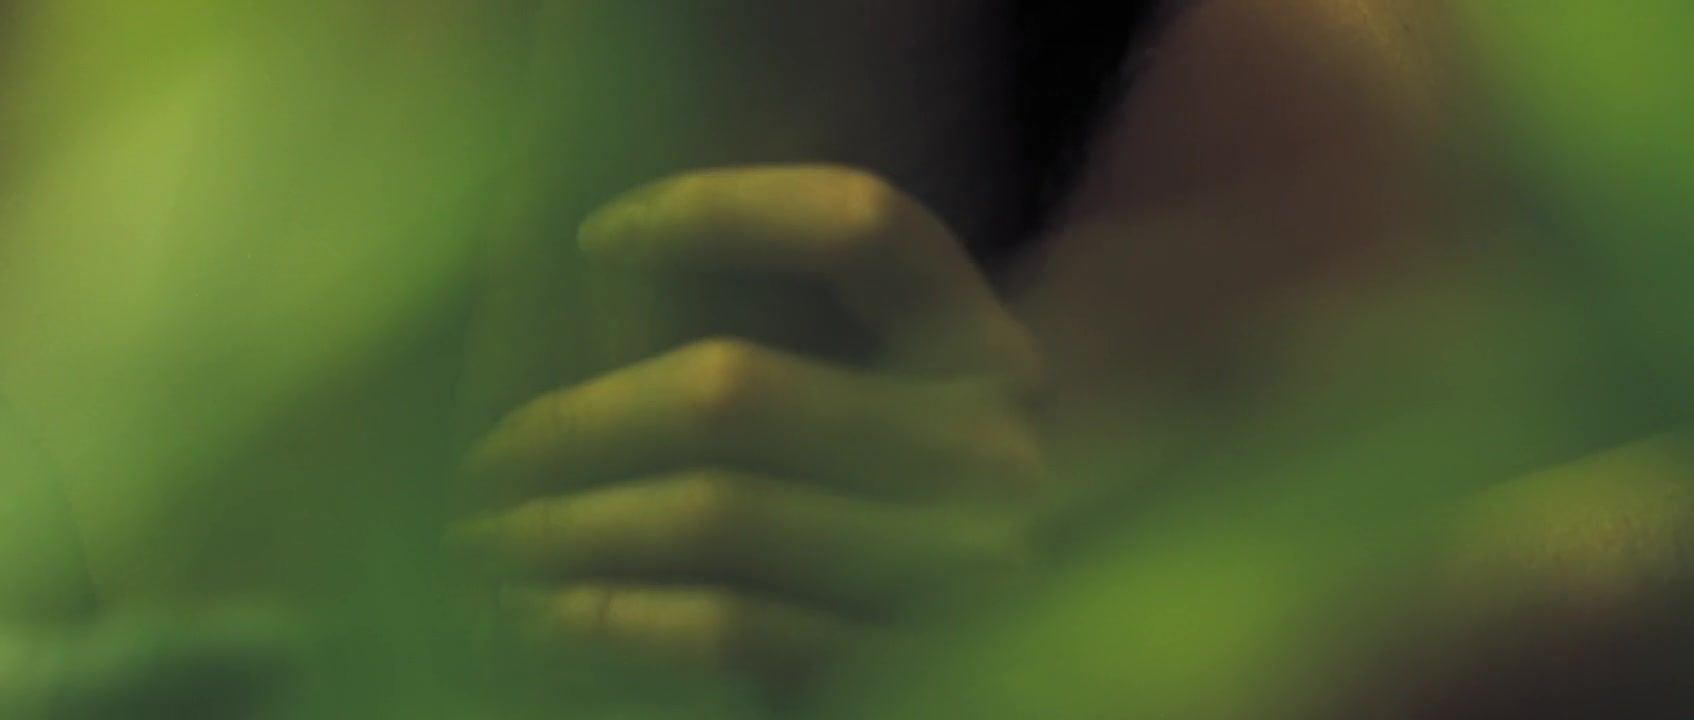 Free Oral Sex Maria Valverde nude in Movie (2013) Spanish Actress Porno